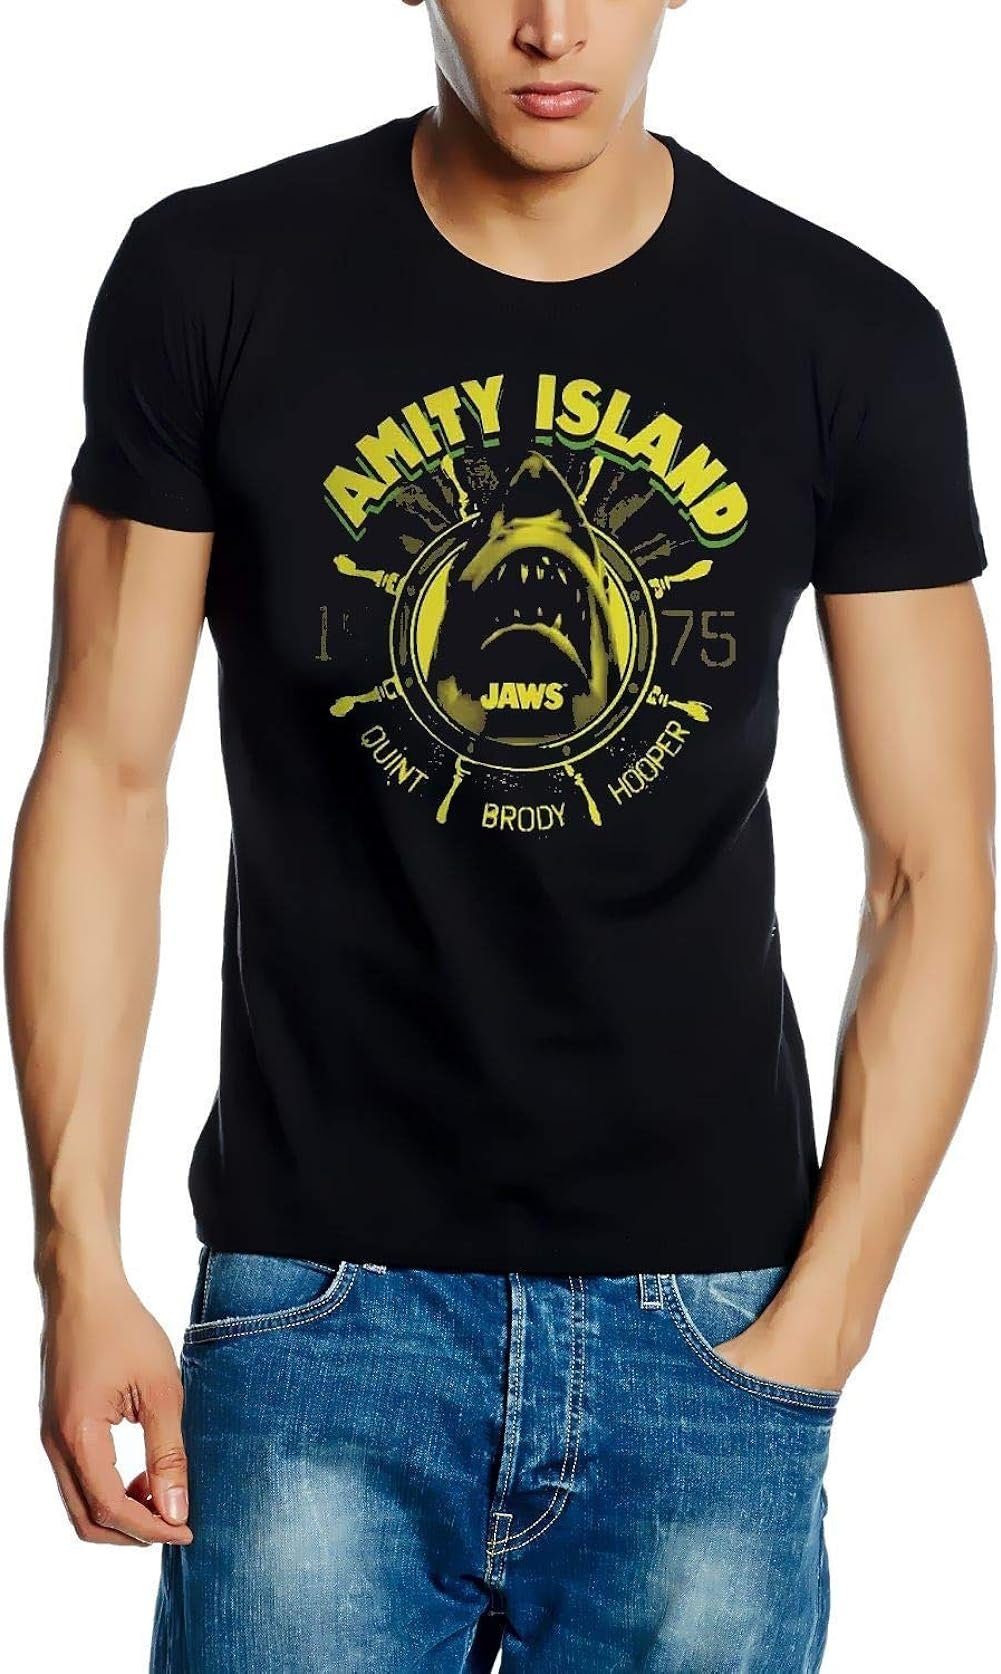 Der Weiße Hai Print-Shirt weiße L XL Hai XXL der JAWS M s schwarz T-Shirt AMITY ISLAND